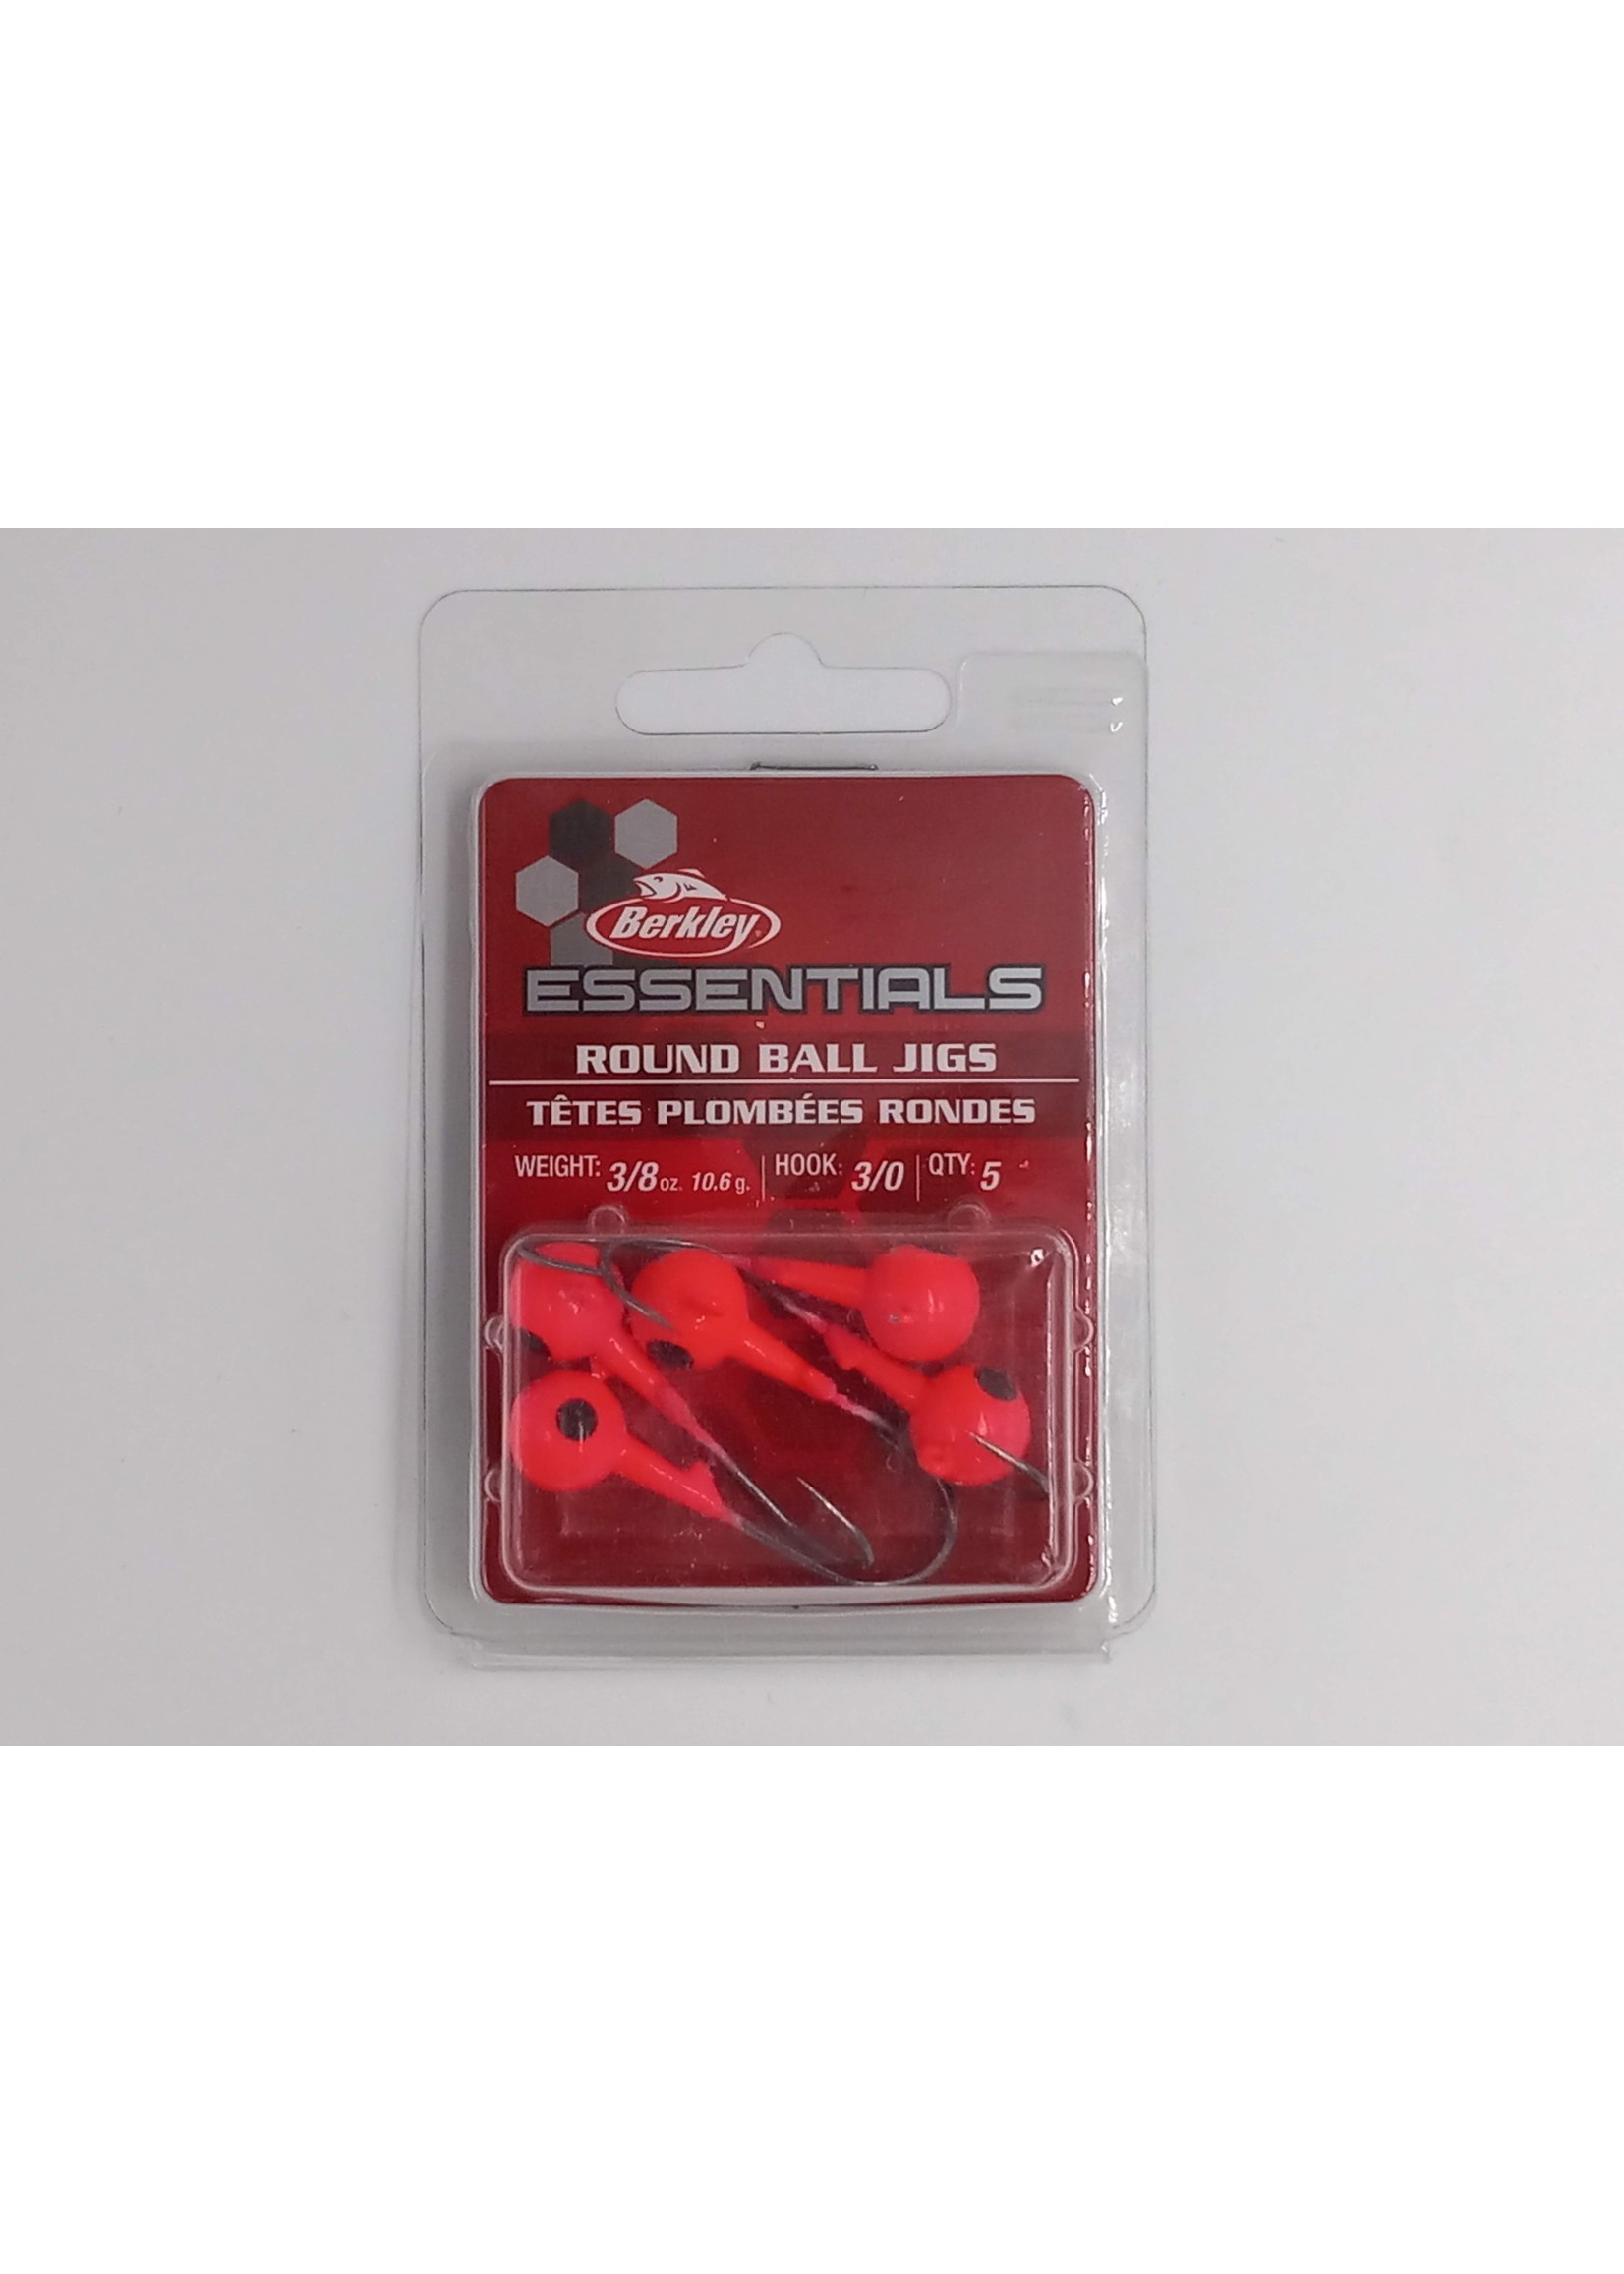 Berkley Berkley Essentials Round Ball Jigs 3.8oz 3.0 Hook